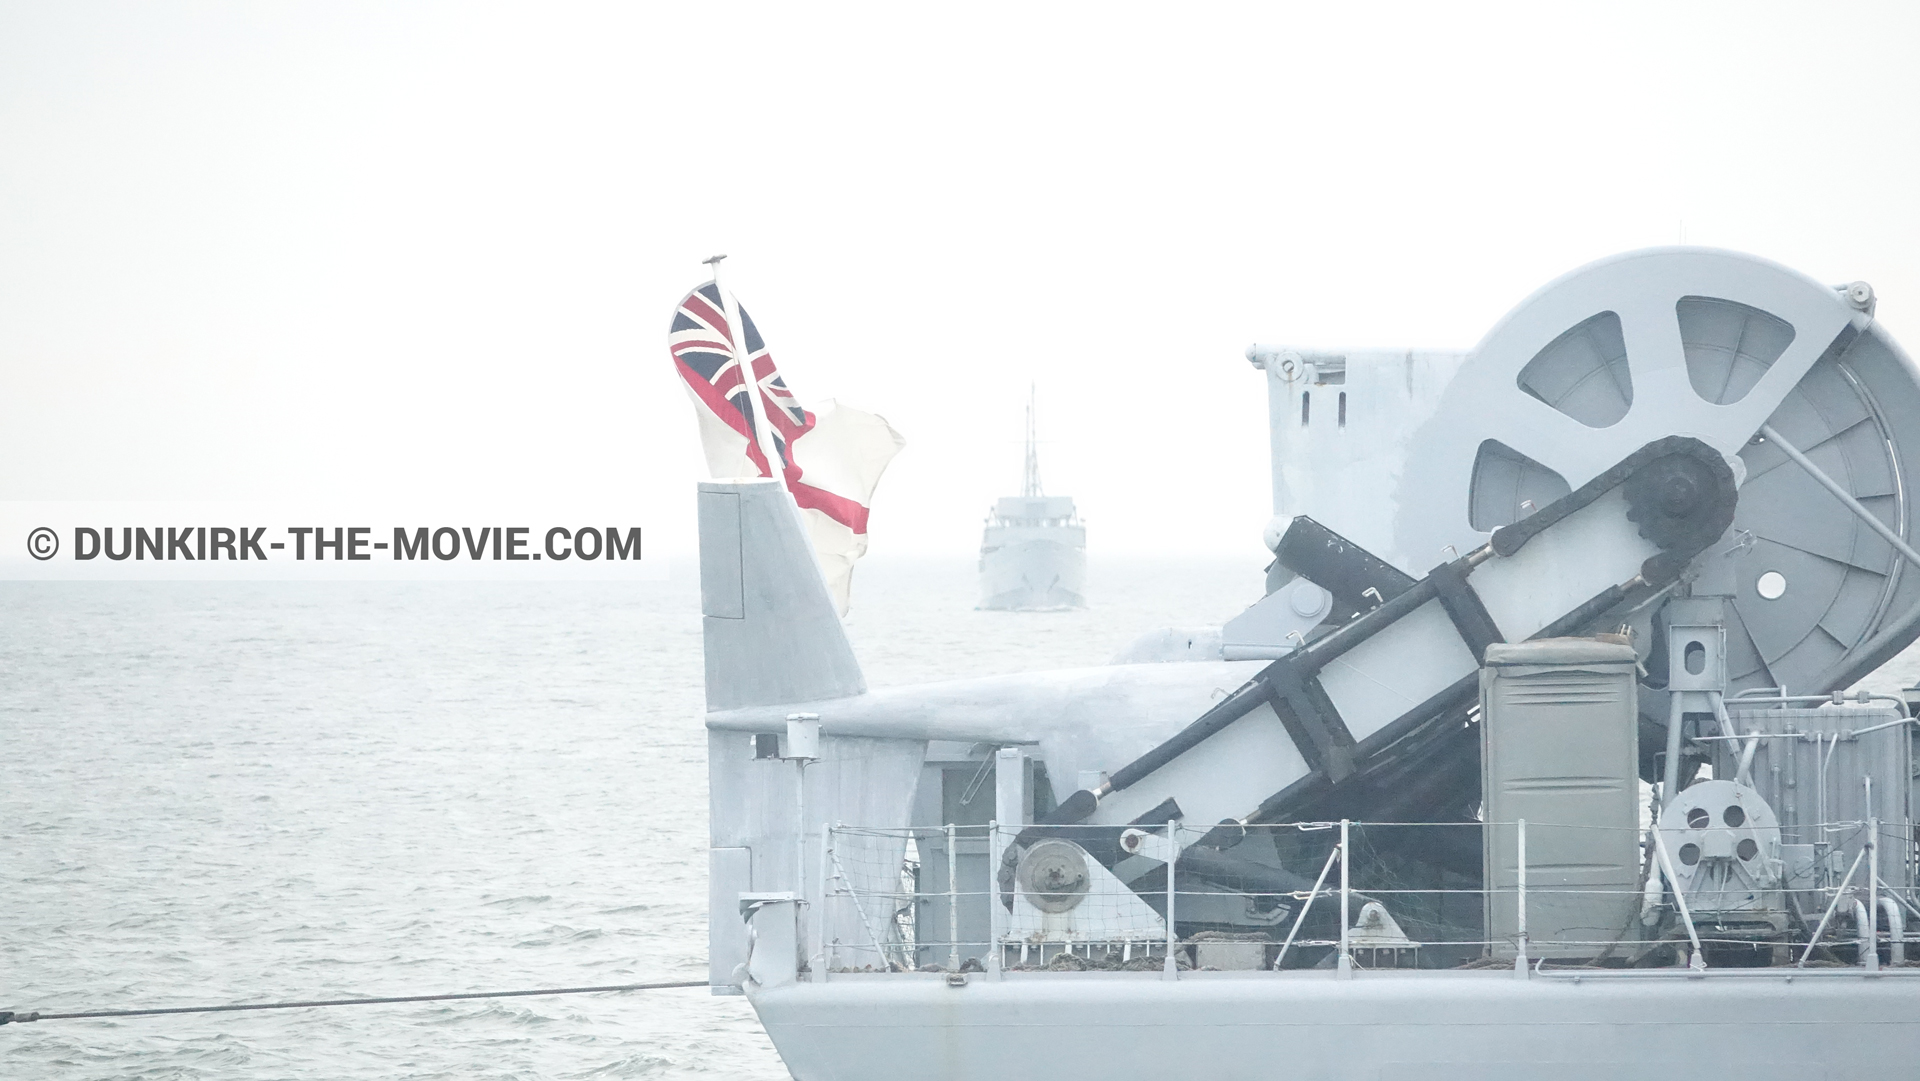 Fotos con mares calma, cielo gris, barco,  durante el rodaje de la película Dunkerque de Nolan